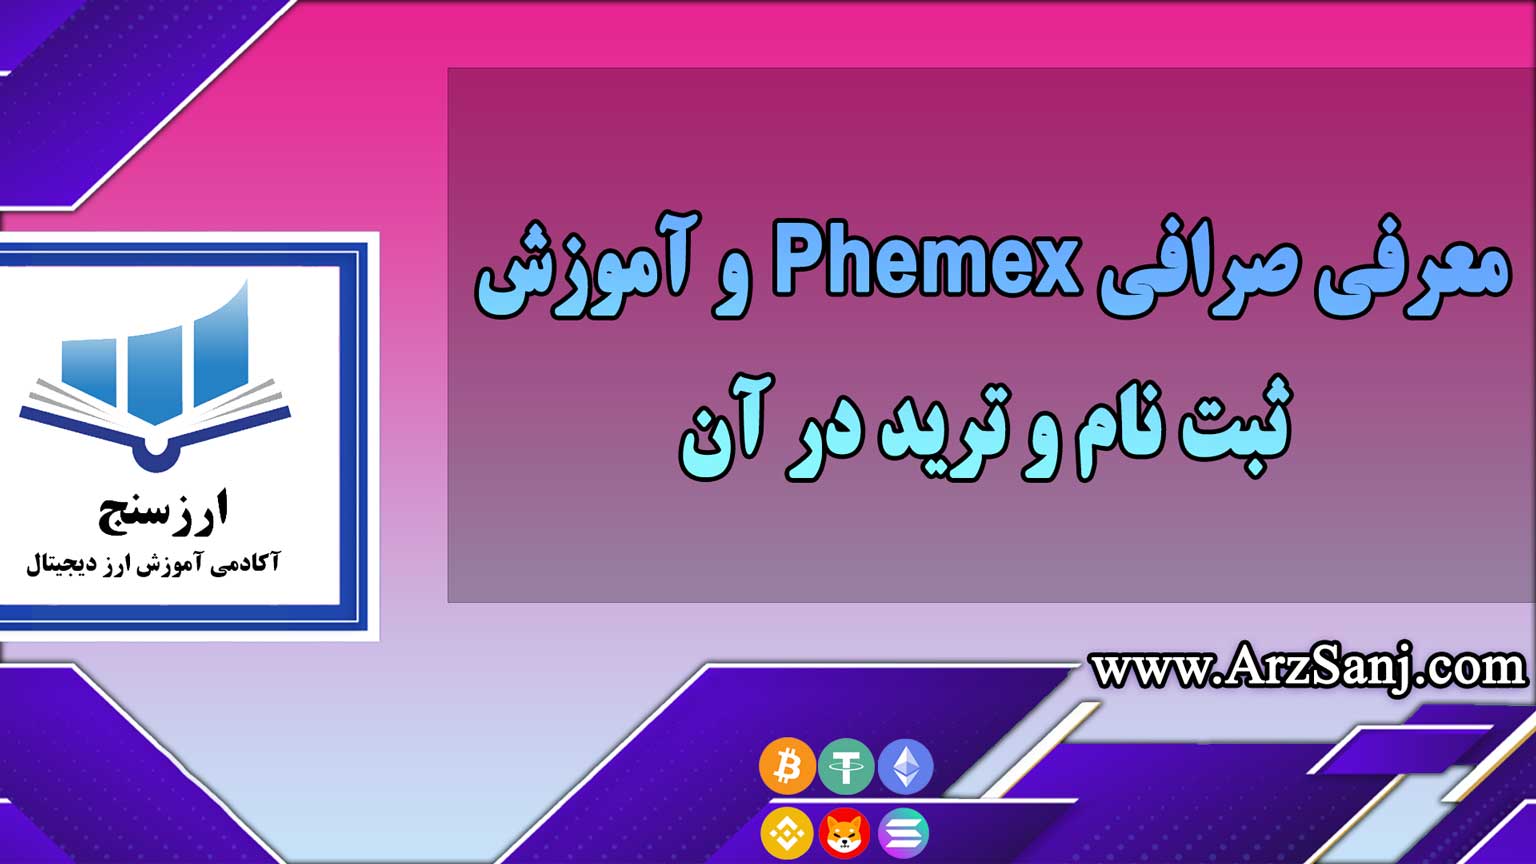 معرفی صرافی Phemex و آموزش ثبت نام و ترید در آن